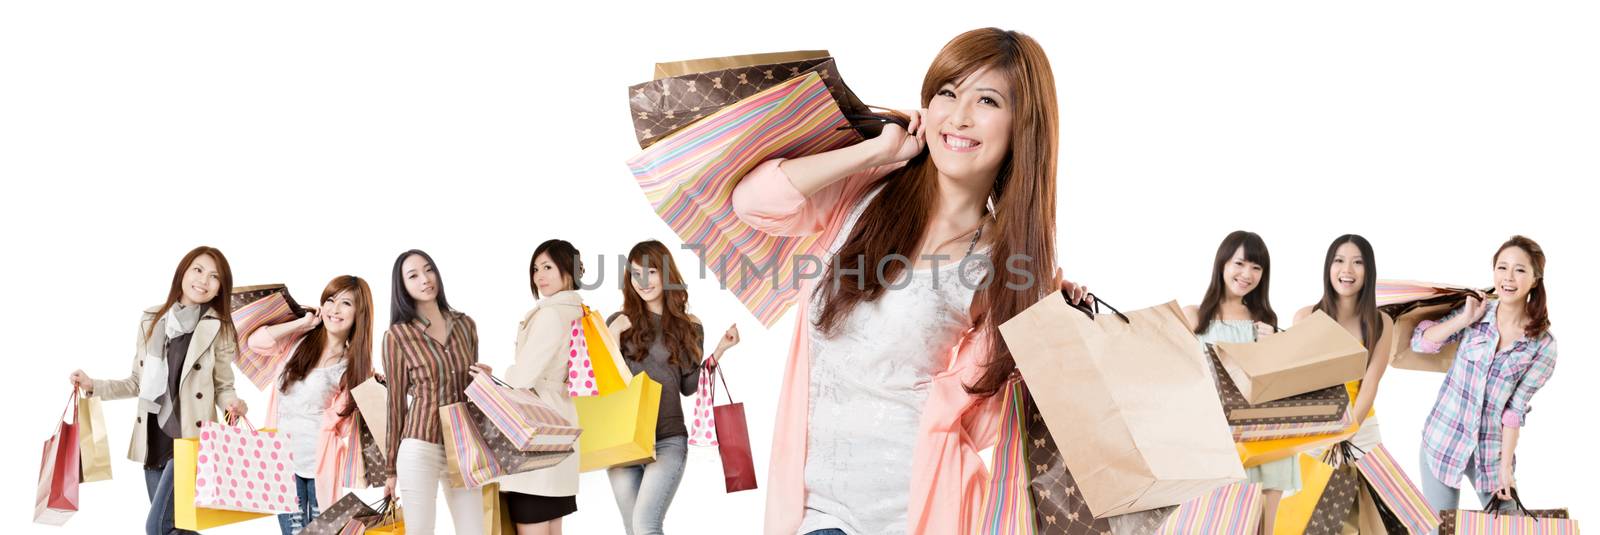 Happy Asian shopping girls by elwynn